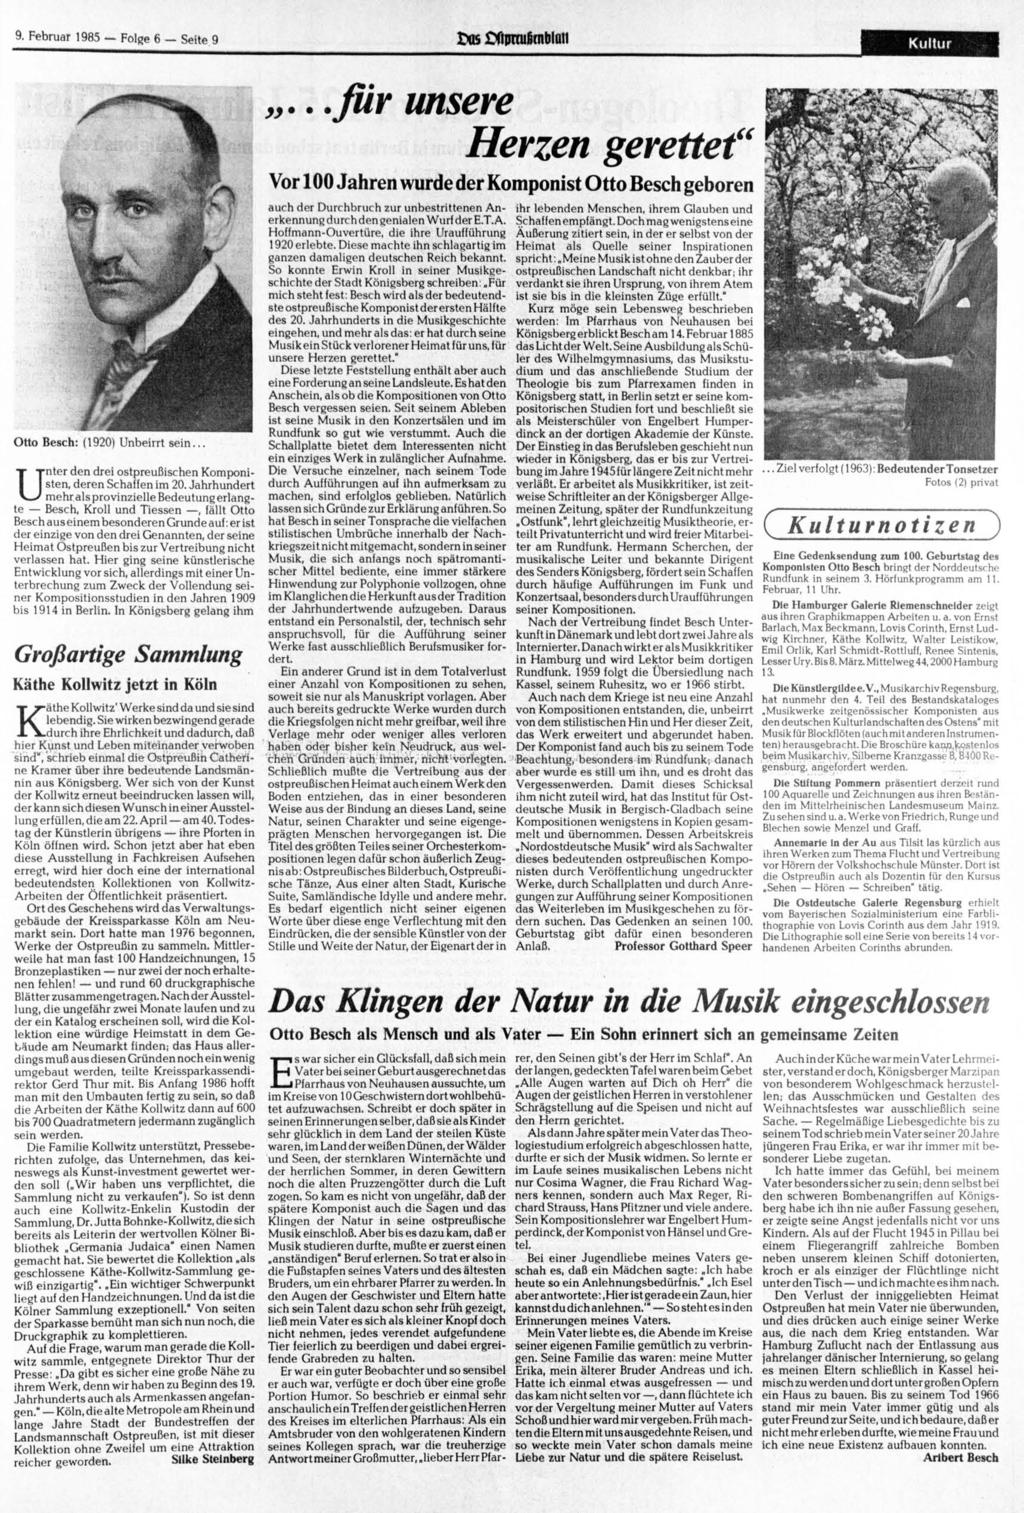 9. 1985 Folge 6 Seite 9 txis OOinxufcnblait Kultur Otto Besch: (1920) Unbeirrt sein... Unter den drei ostpreußischen Komponisten, deren Schaffen im 20.